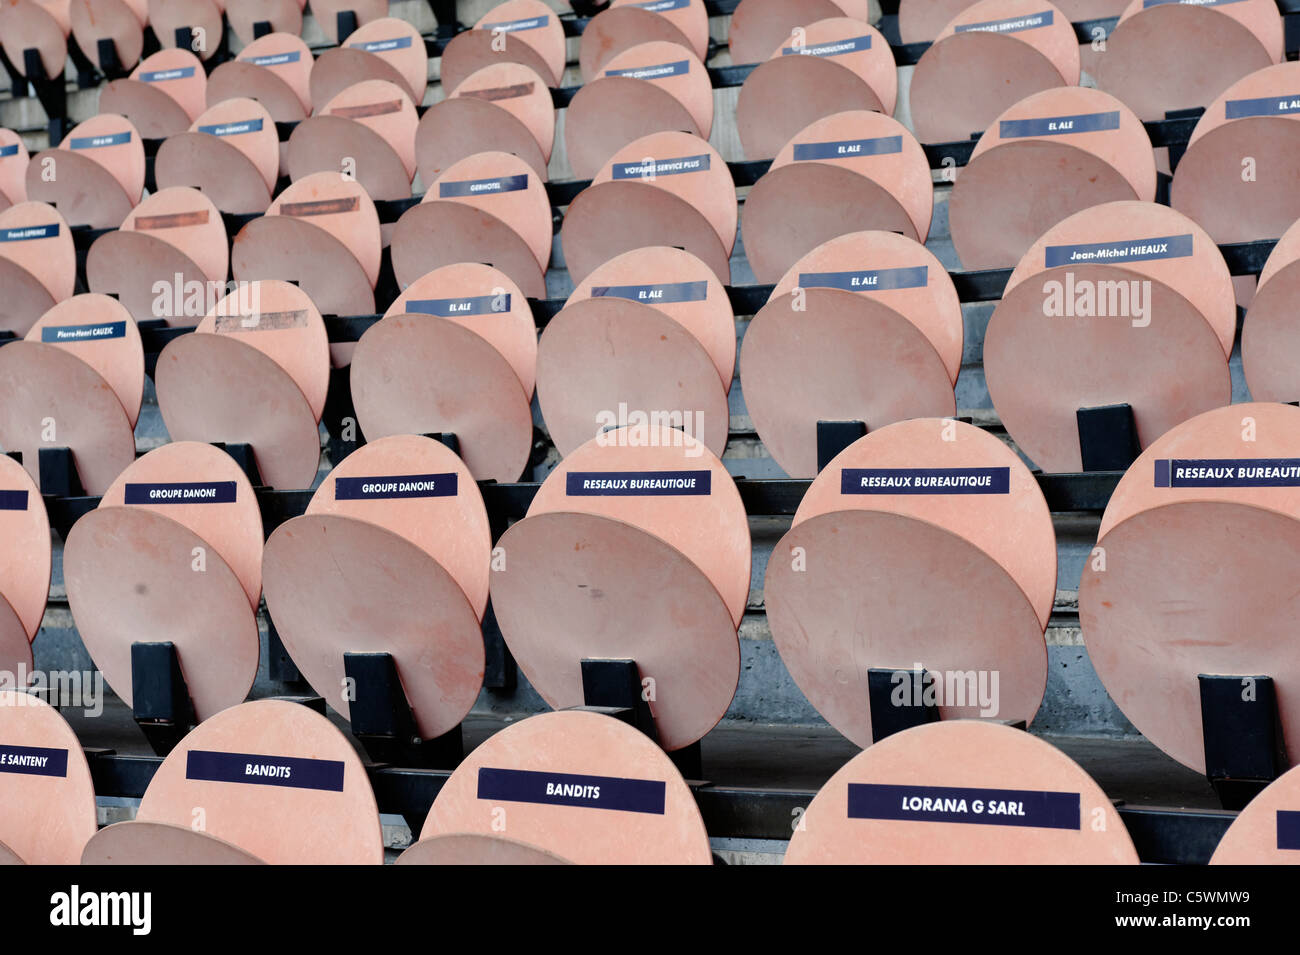 seats-at-the-parc-des-princes-stadium-in-paris-home-paris-saint-germain-C5WMW9.jpeg